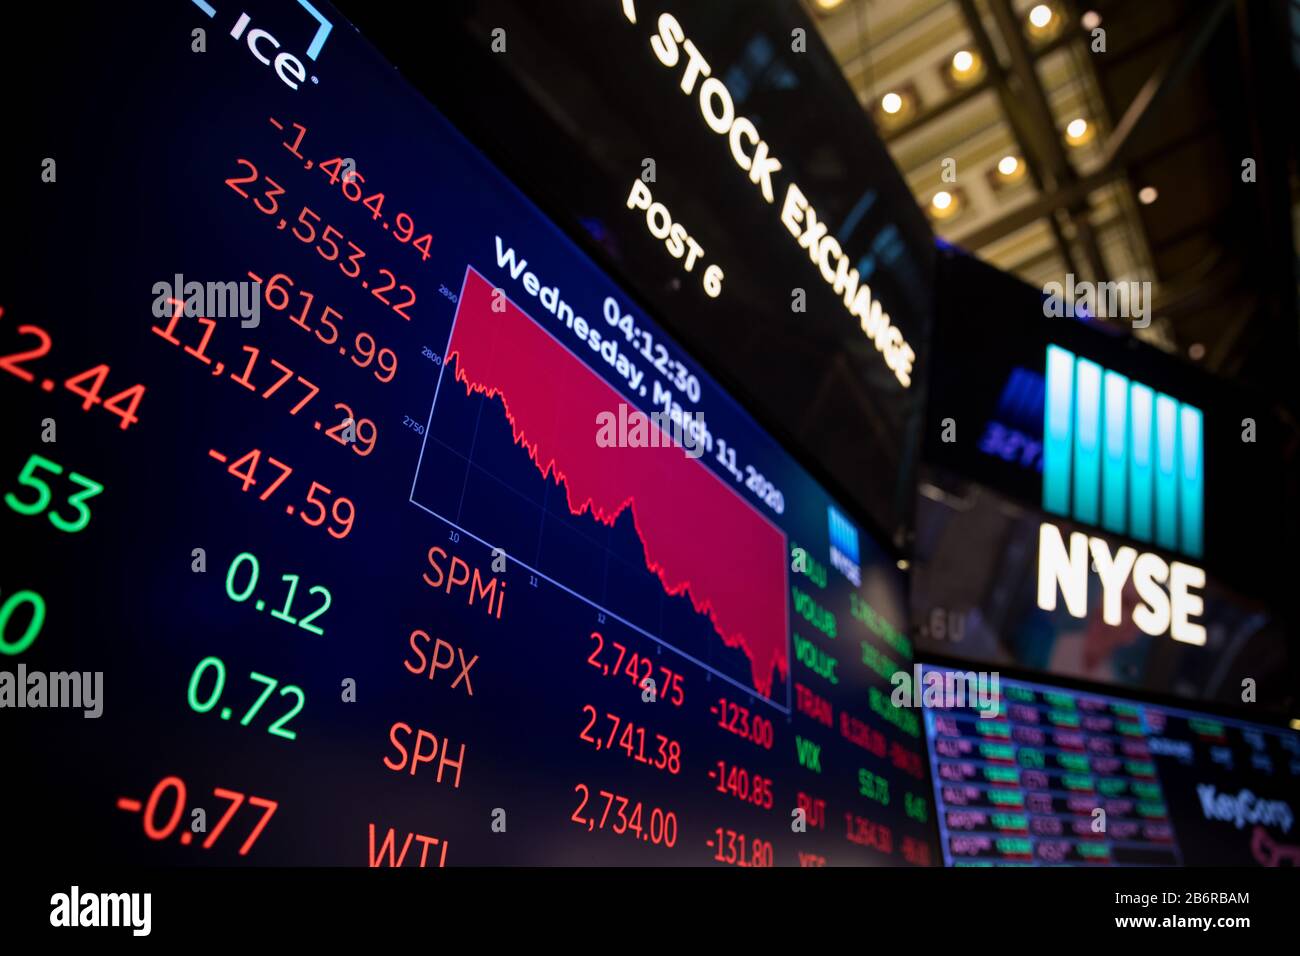 New York, Stati Uniti. 11th Mar, 2020. Gli schermi mostrano i dati di trading alla New York Stock Exchange (NYSE) di New York, Stati Uniti, l'11 marzo 2020. La Dow Jones Industrial Average ha registrato un picco di 1.464,94 punti, pari al 5,86%, a 23.553,22. L'indice delle 30 azioni è sceso in un territorio di mercato dell'orso, in diminuzione di oltre il 20% rispetto alla chiusura record del mese scorso. La S&P 500 è diminuita di 140,85 punti, pari al 4,89%, per arrivare a 2.741,38. L'indice composito Nasdaq ha immerso 392,20 punti, ossia 4,70 per cento, a 7,952,05. Credito: Michael Nagle/Xinhua/Alamy Live News Foto Stock